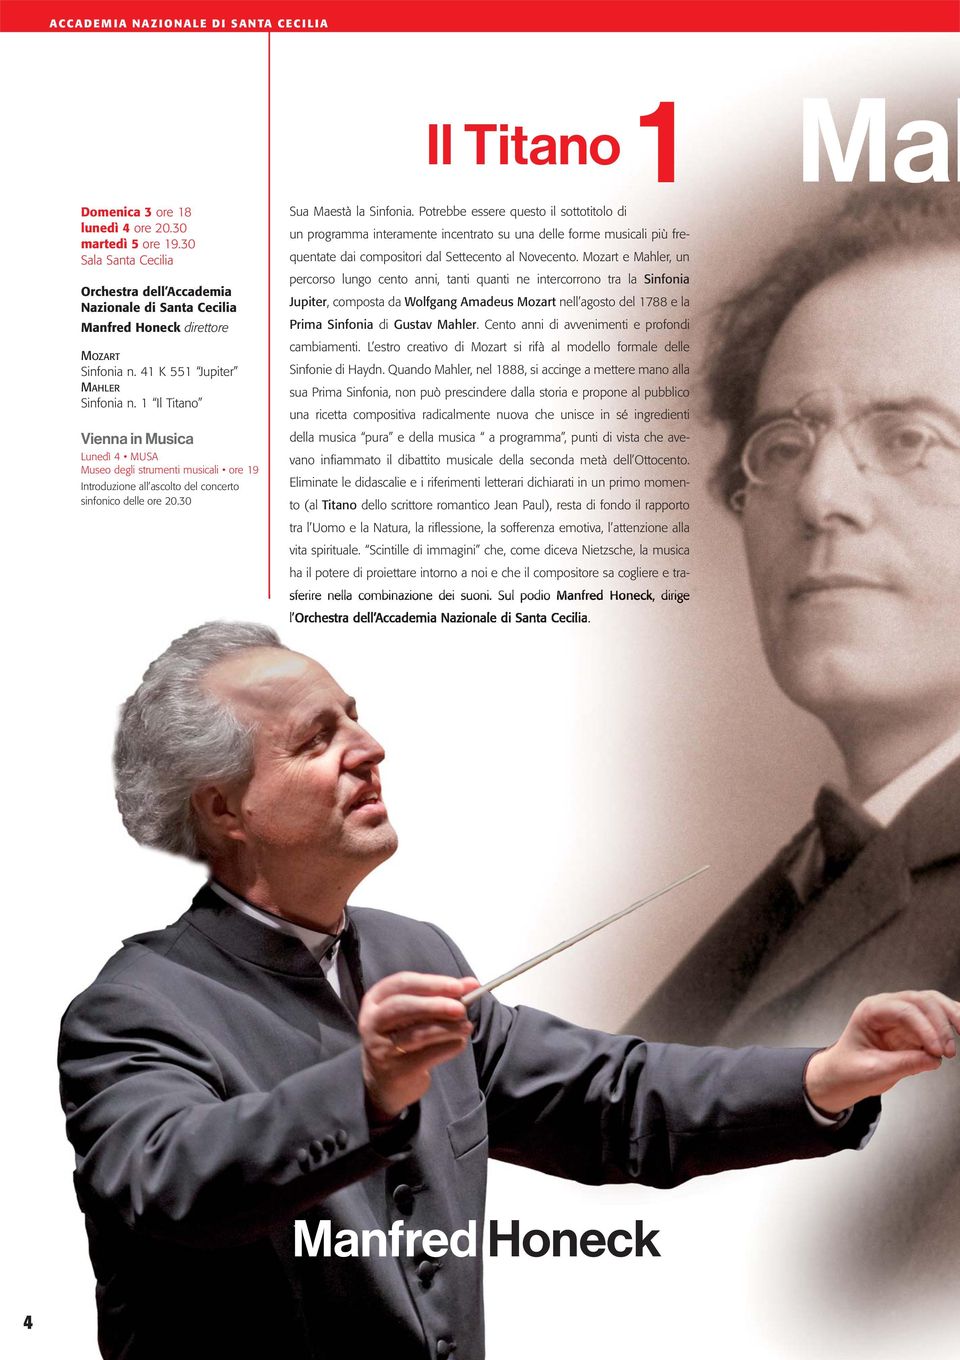 1 Il Titano Vienna in Musica Lunedì 4 MUSA Museo degli strumenti musicali ore 19 Introduzione all ascolto del concerto sinfonico delle ore 20.30 Sua Maestà la Sinfonia.